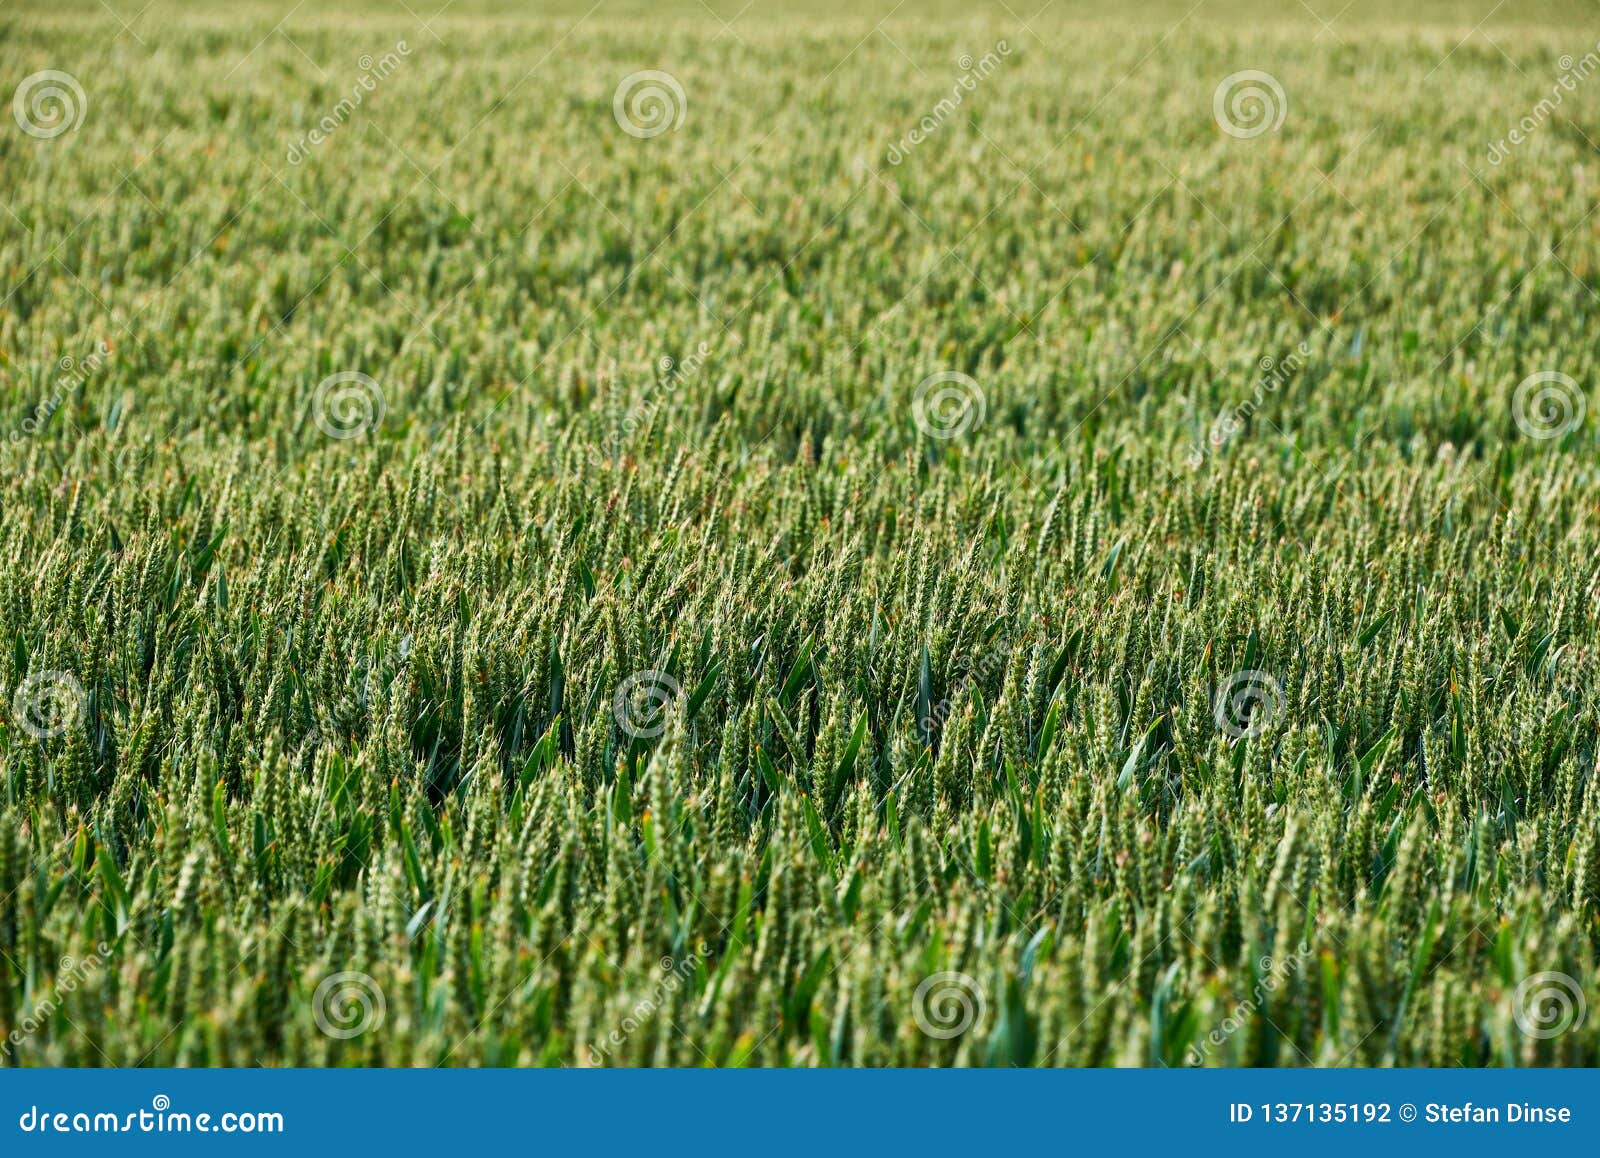 Plantas del trigo en campo foto de archivo. Imagen de planta - 137135192